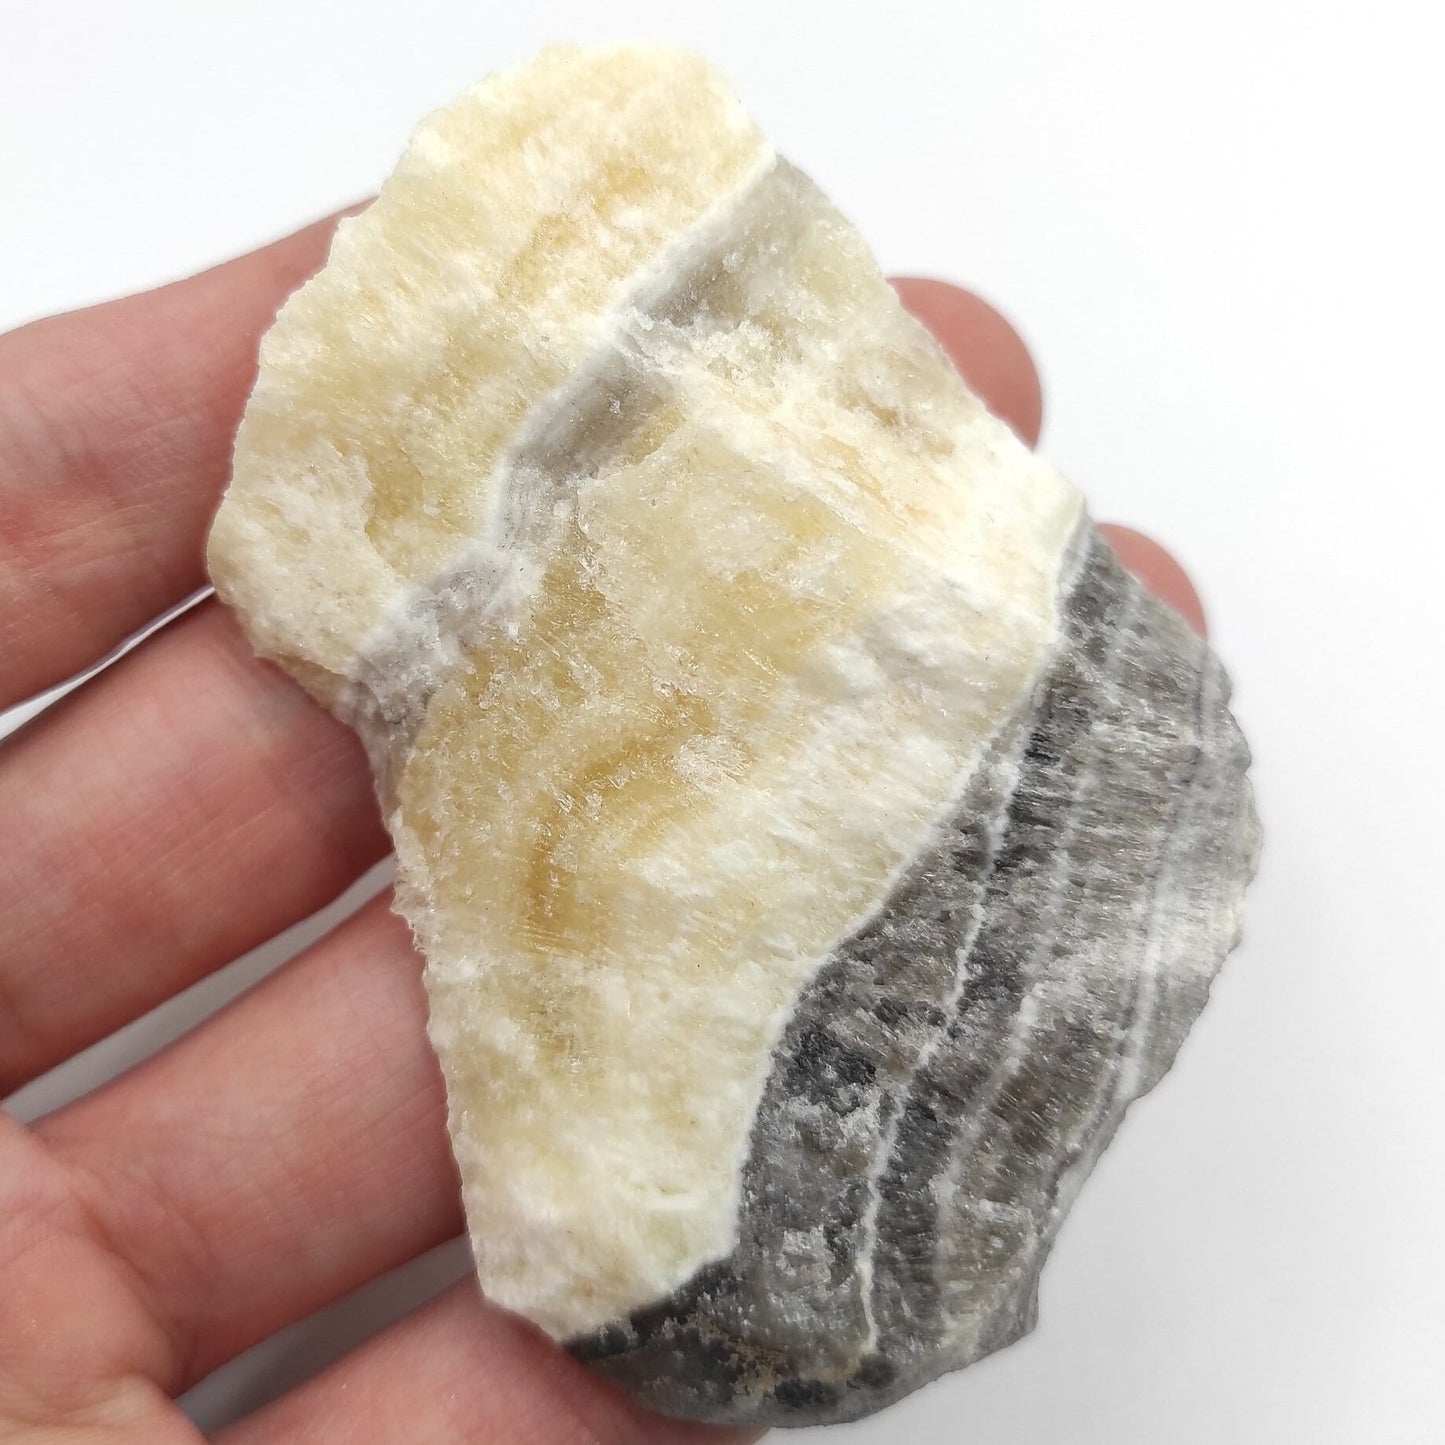 59g Zebra Calcite - Patterned Calcite Crystal - Chihuahua, Mexico - Natural Calcite - Calcite Stone - Raw Calcite Piece - Rough Calcite